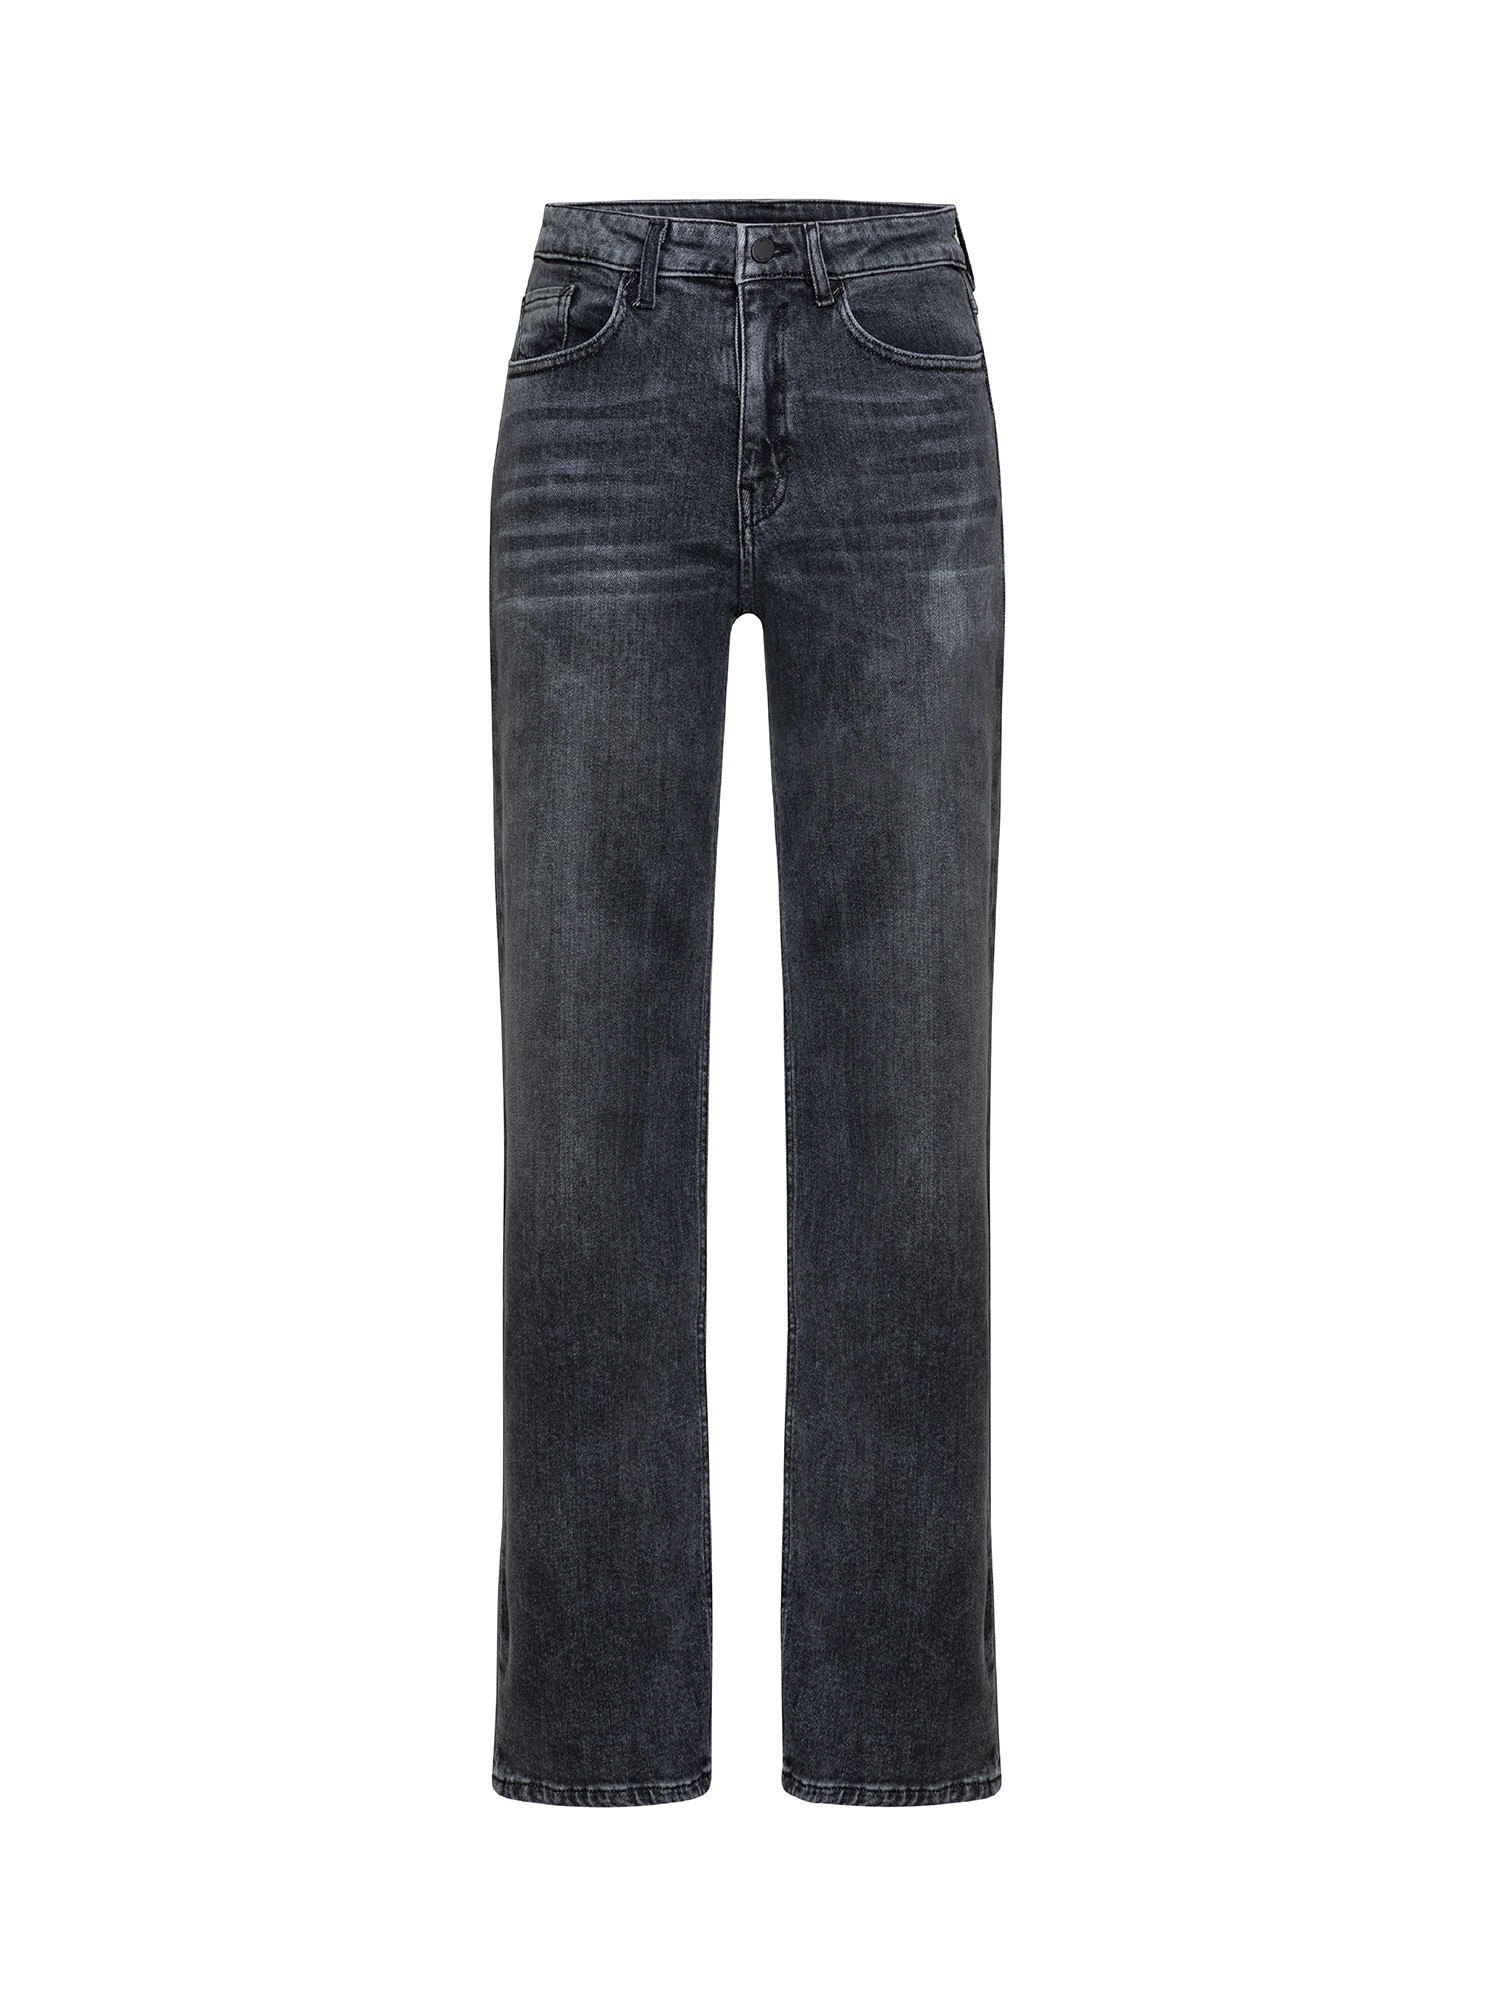 Esprit - Jeans cinque tasche, Grigio scuro, large image number 0